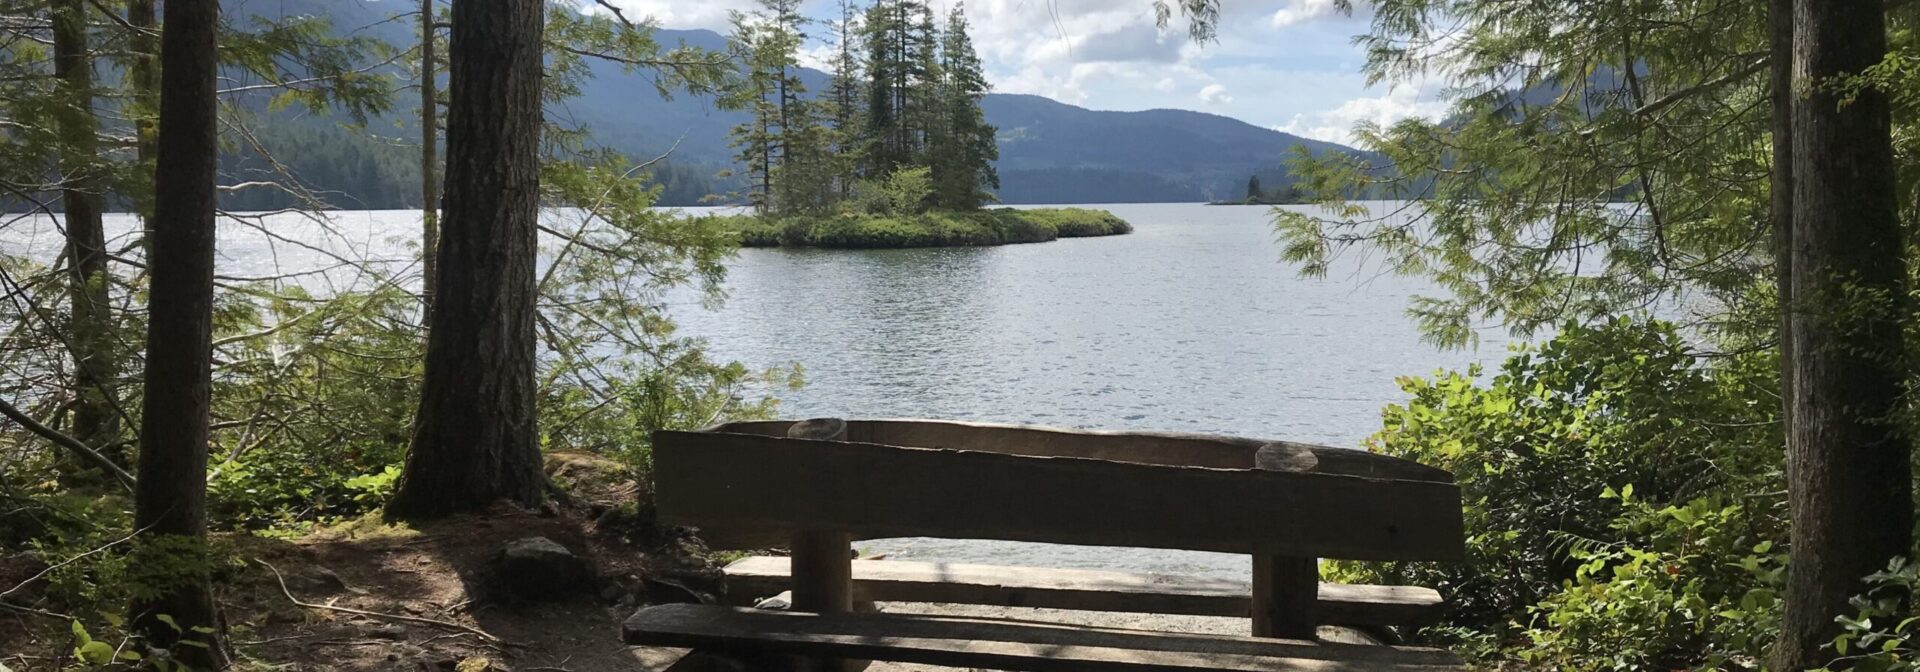 Take a break on this bench at Inland Lake